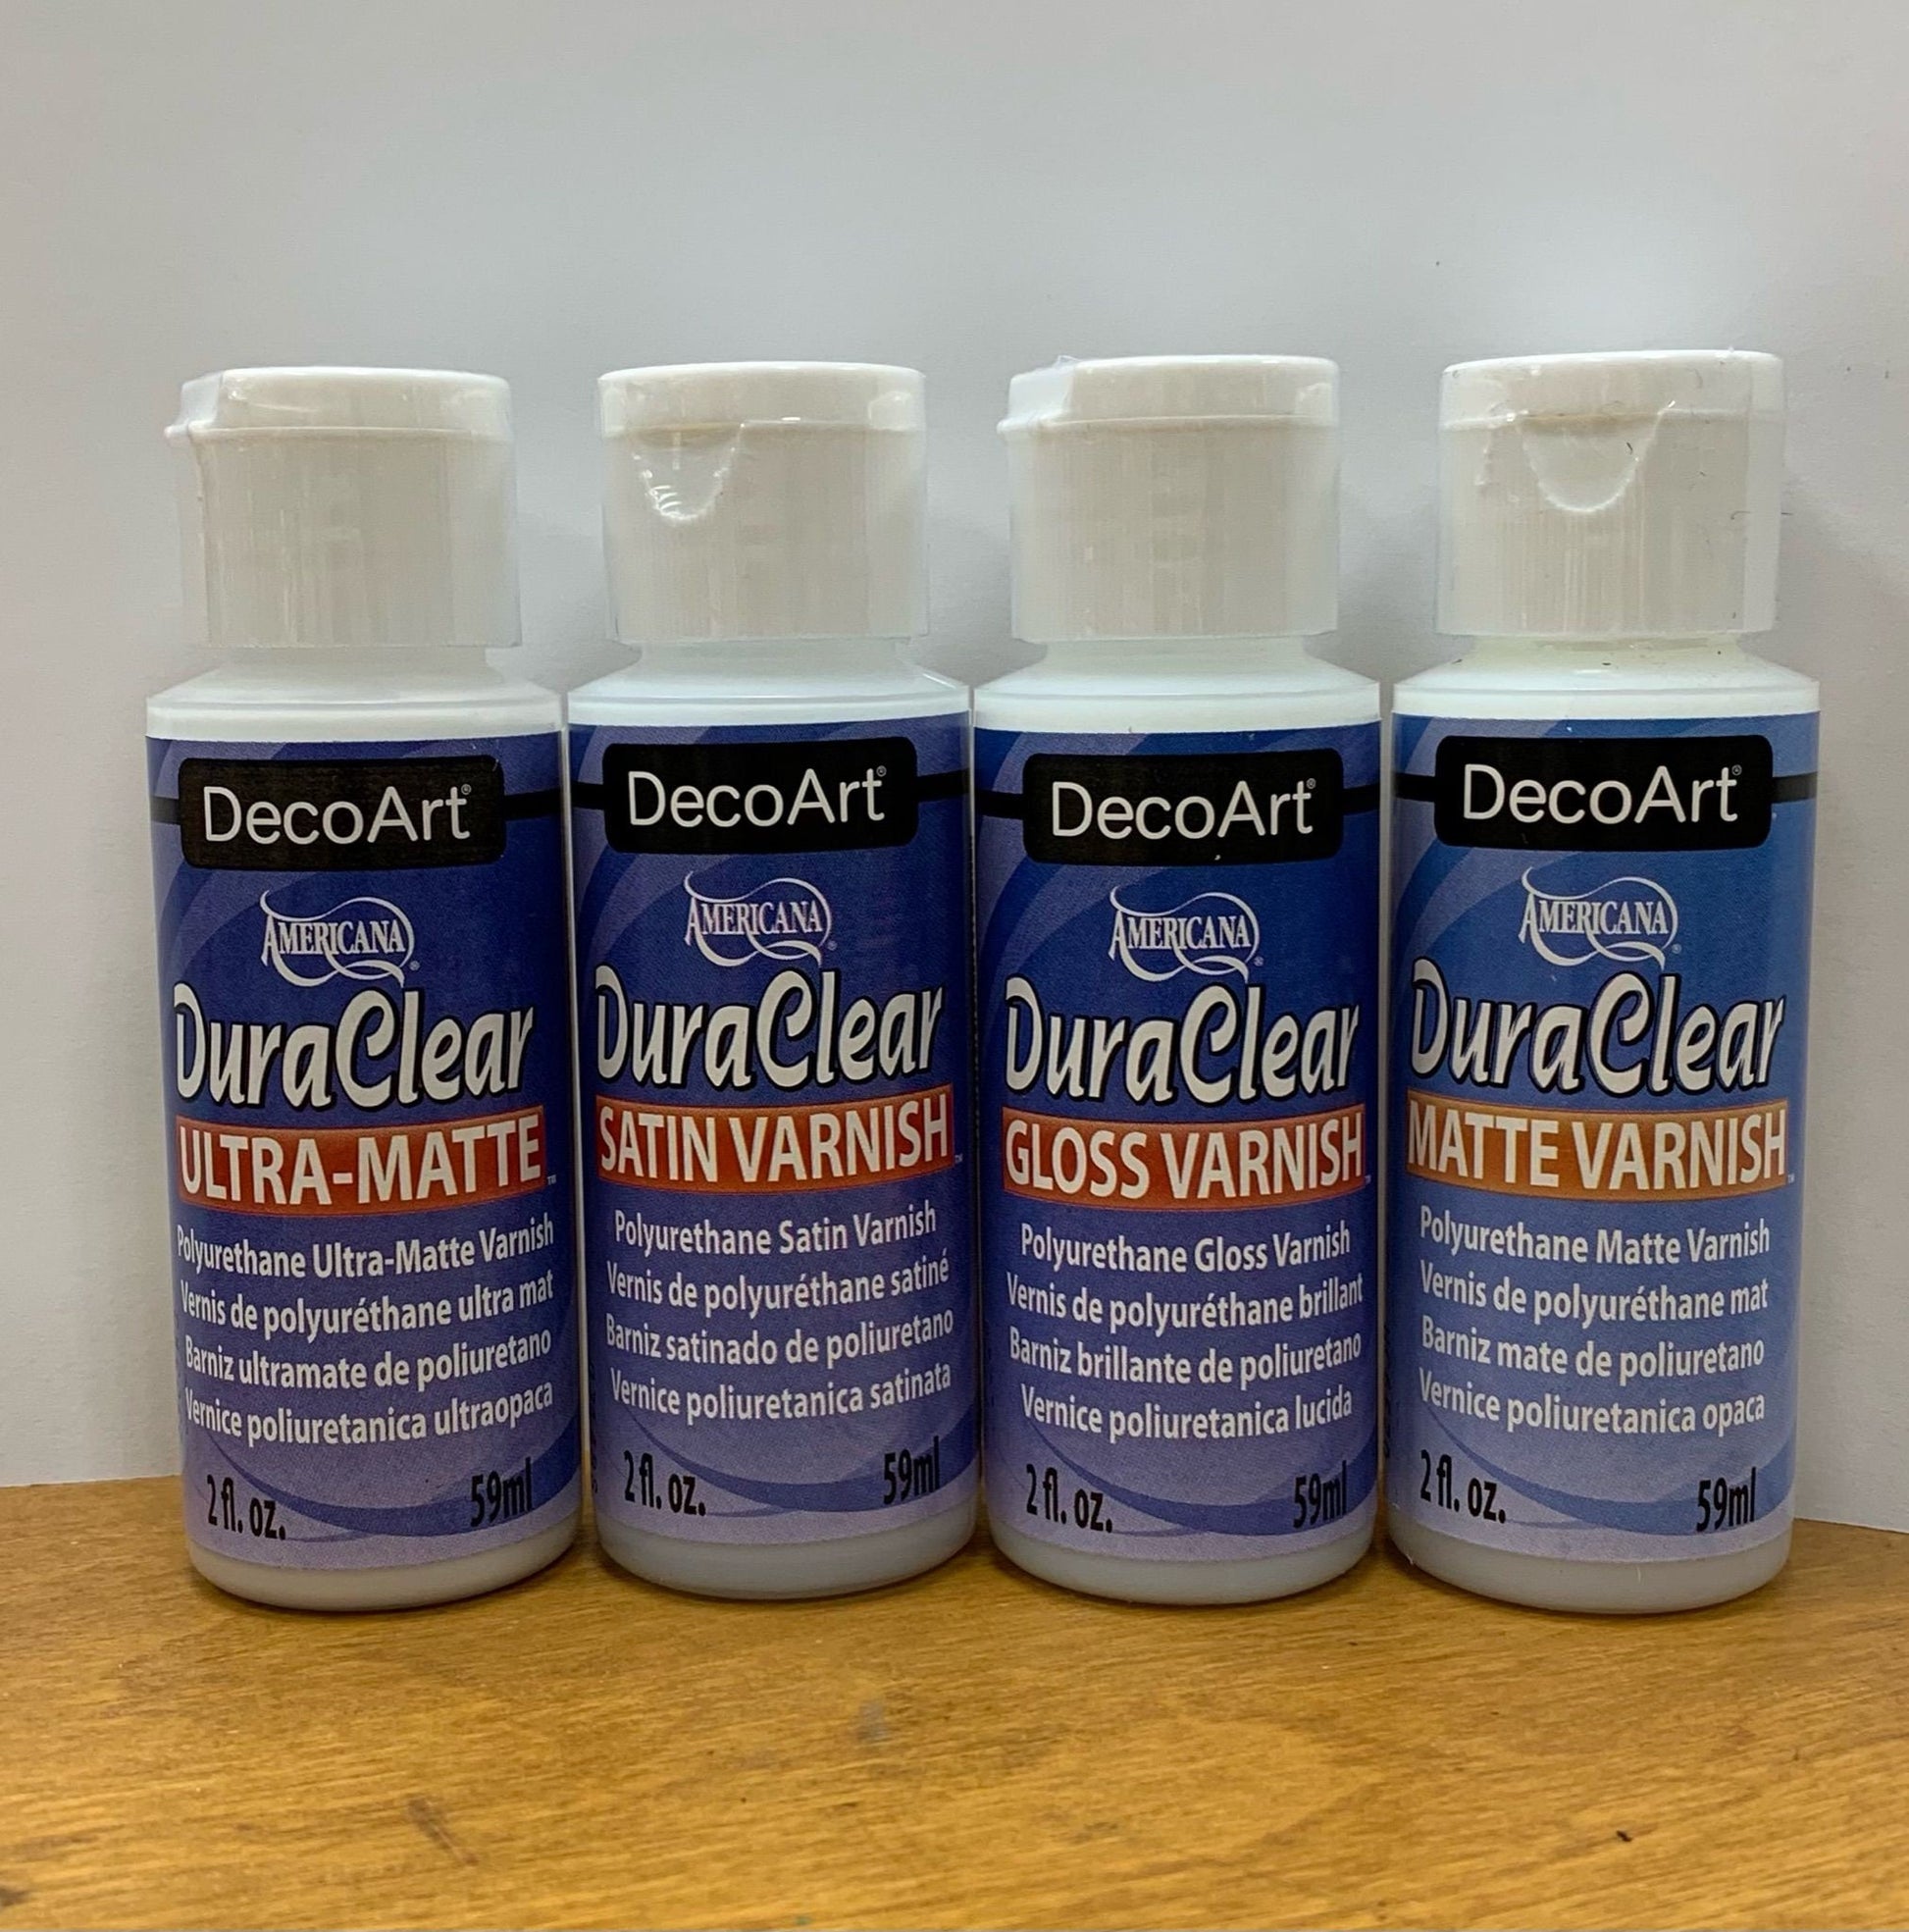 DuraClear acrylic varnish by DecoArt, 2 ounce bottle, 4 options